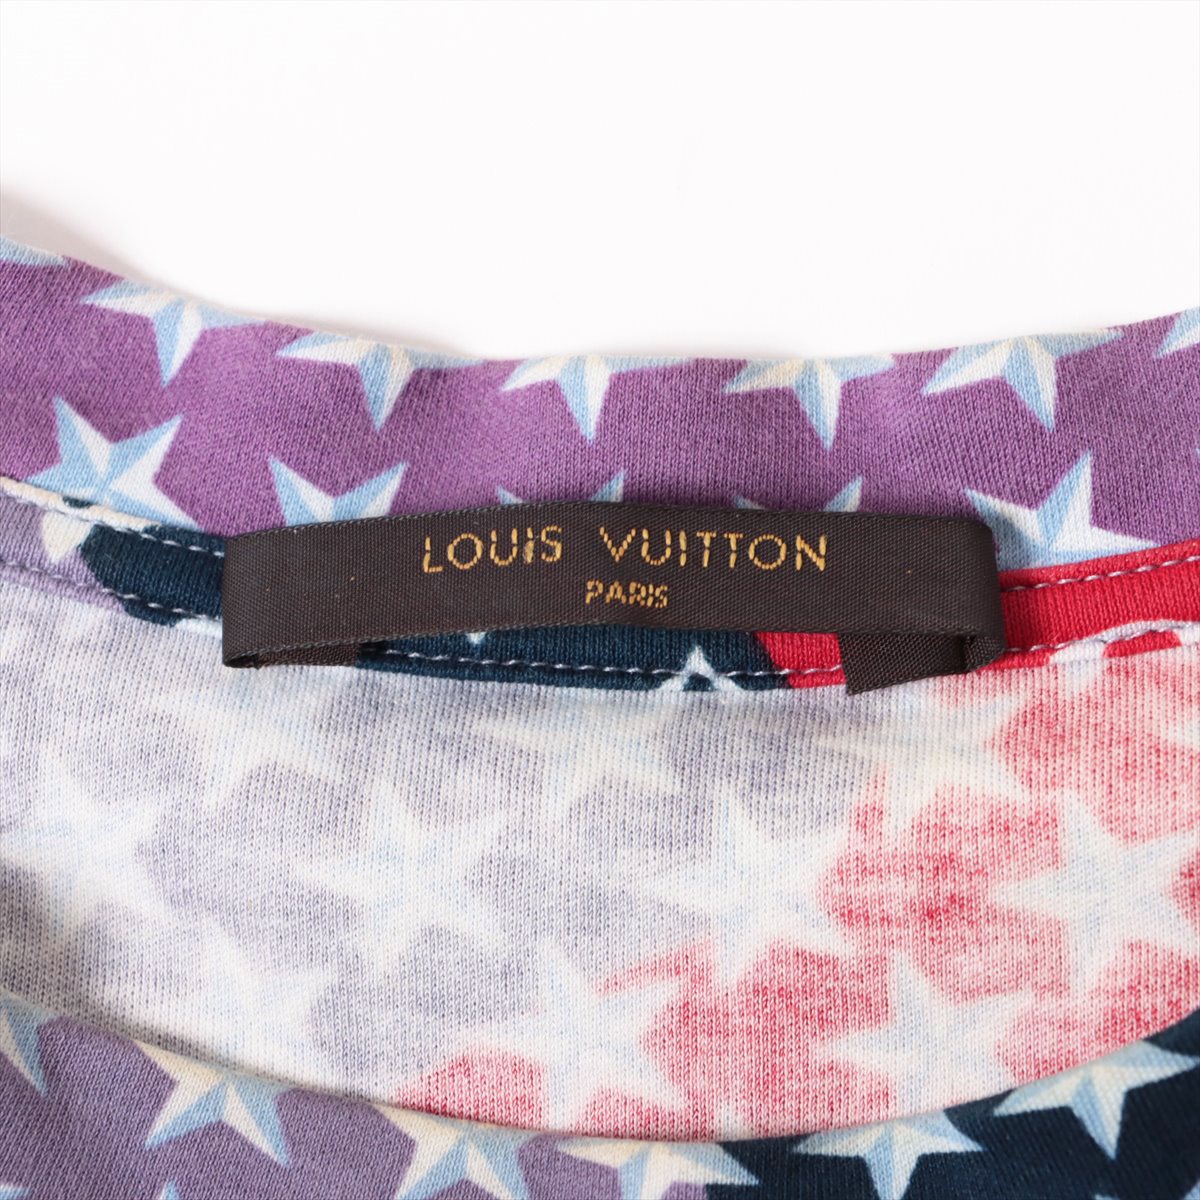 Louis Vuitton 11AW Cotton T-shirt XS Men's Multicolor  RM111M